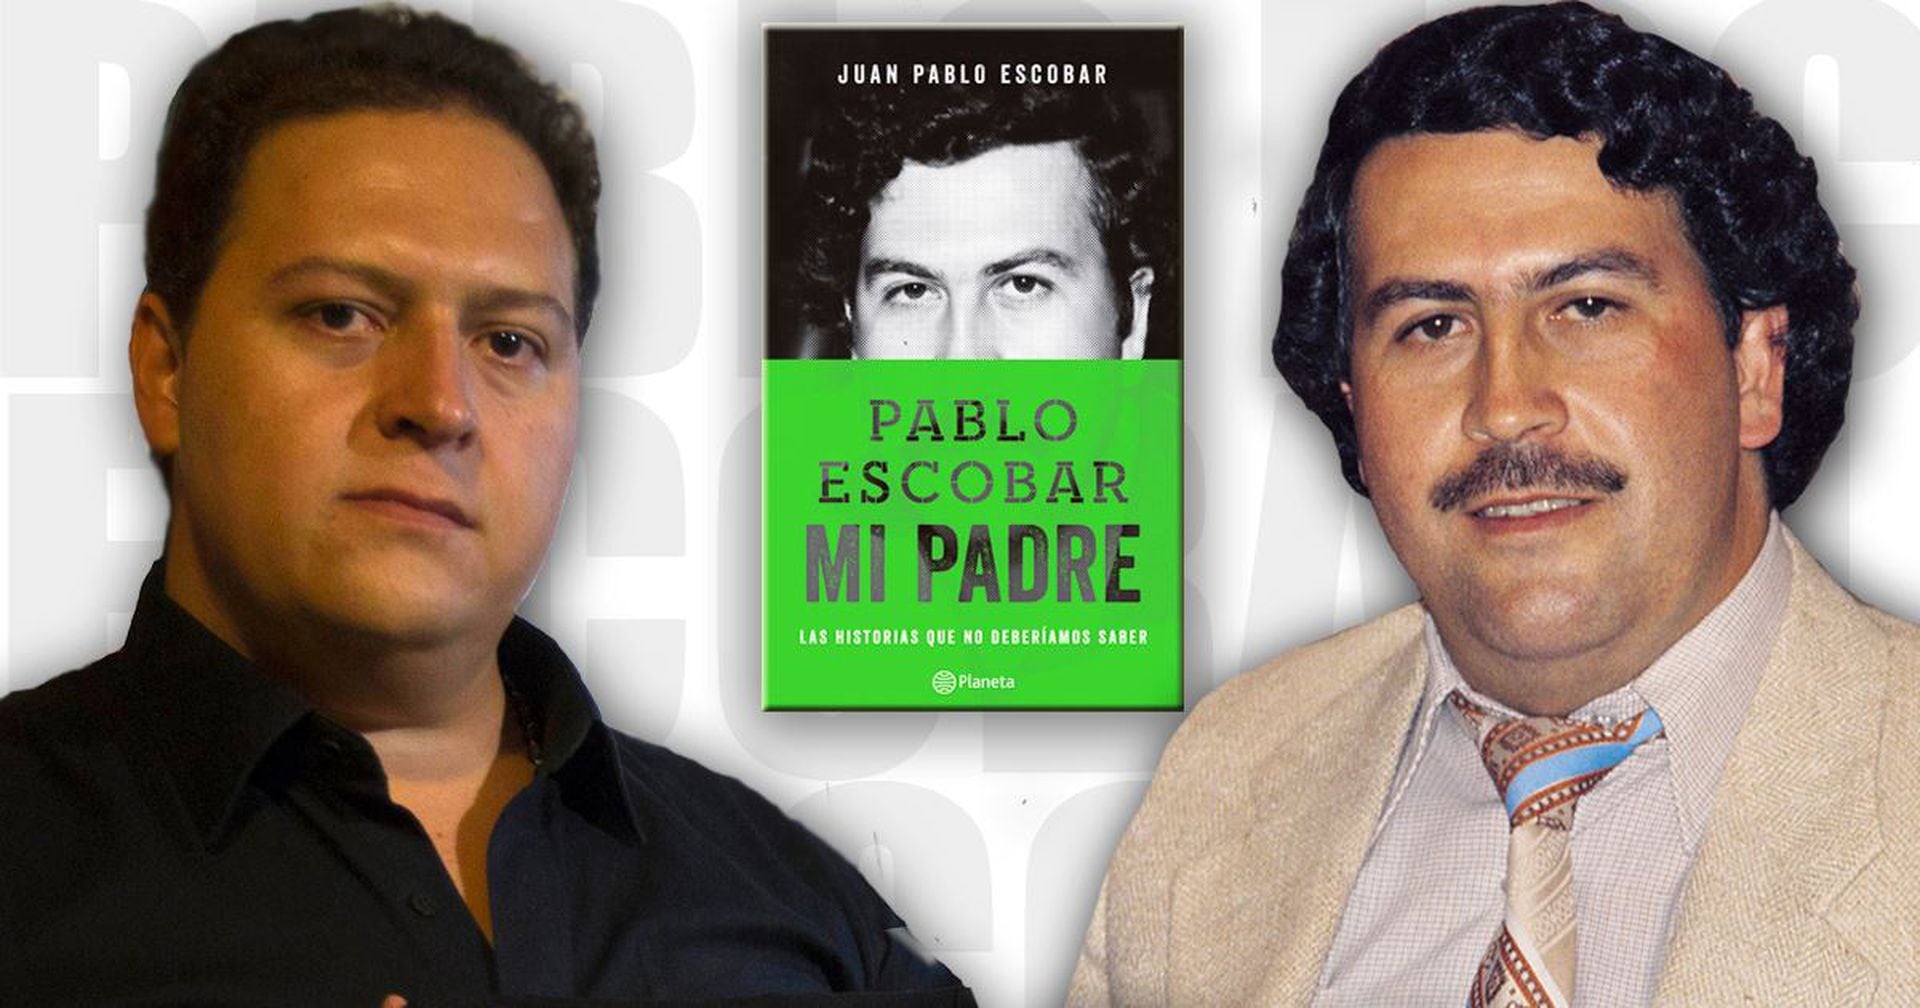 Pablo Escobar fue traicionado por su propia familia, dice su hijo